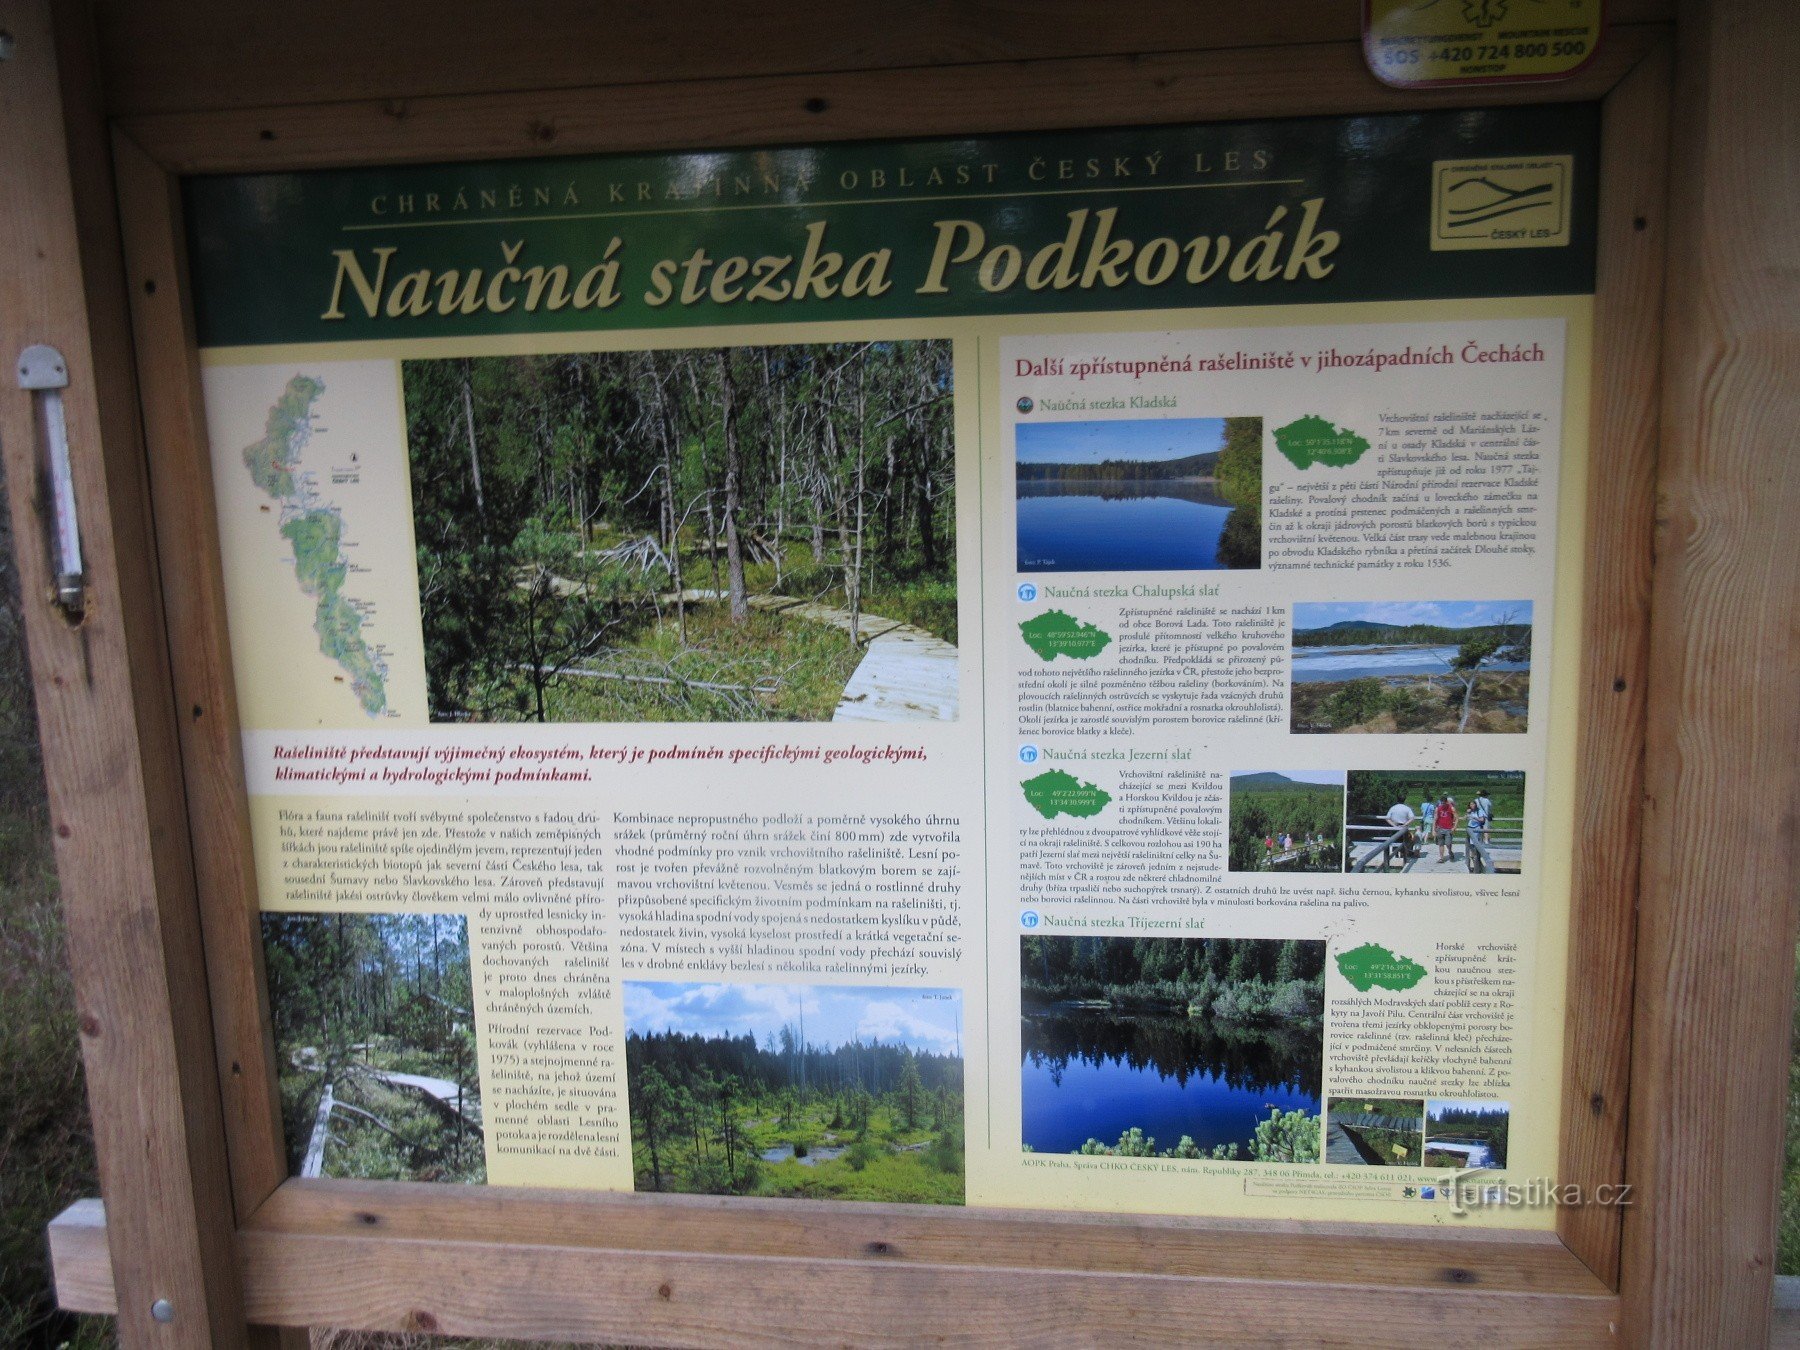 Szumawa - ścieżka dydaktyczna Podkovák